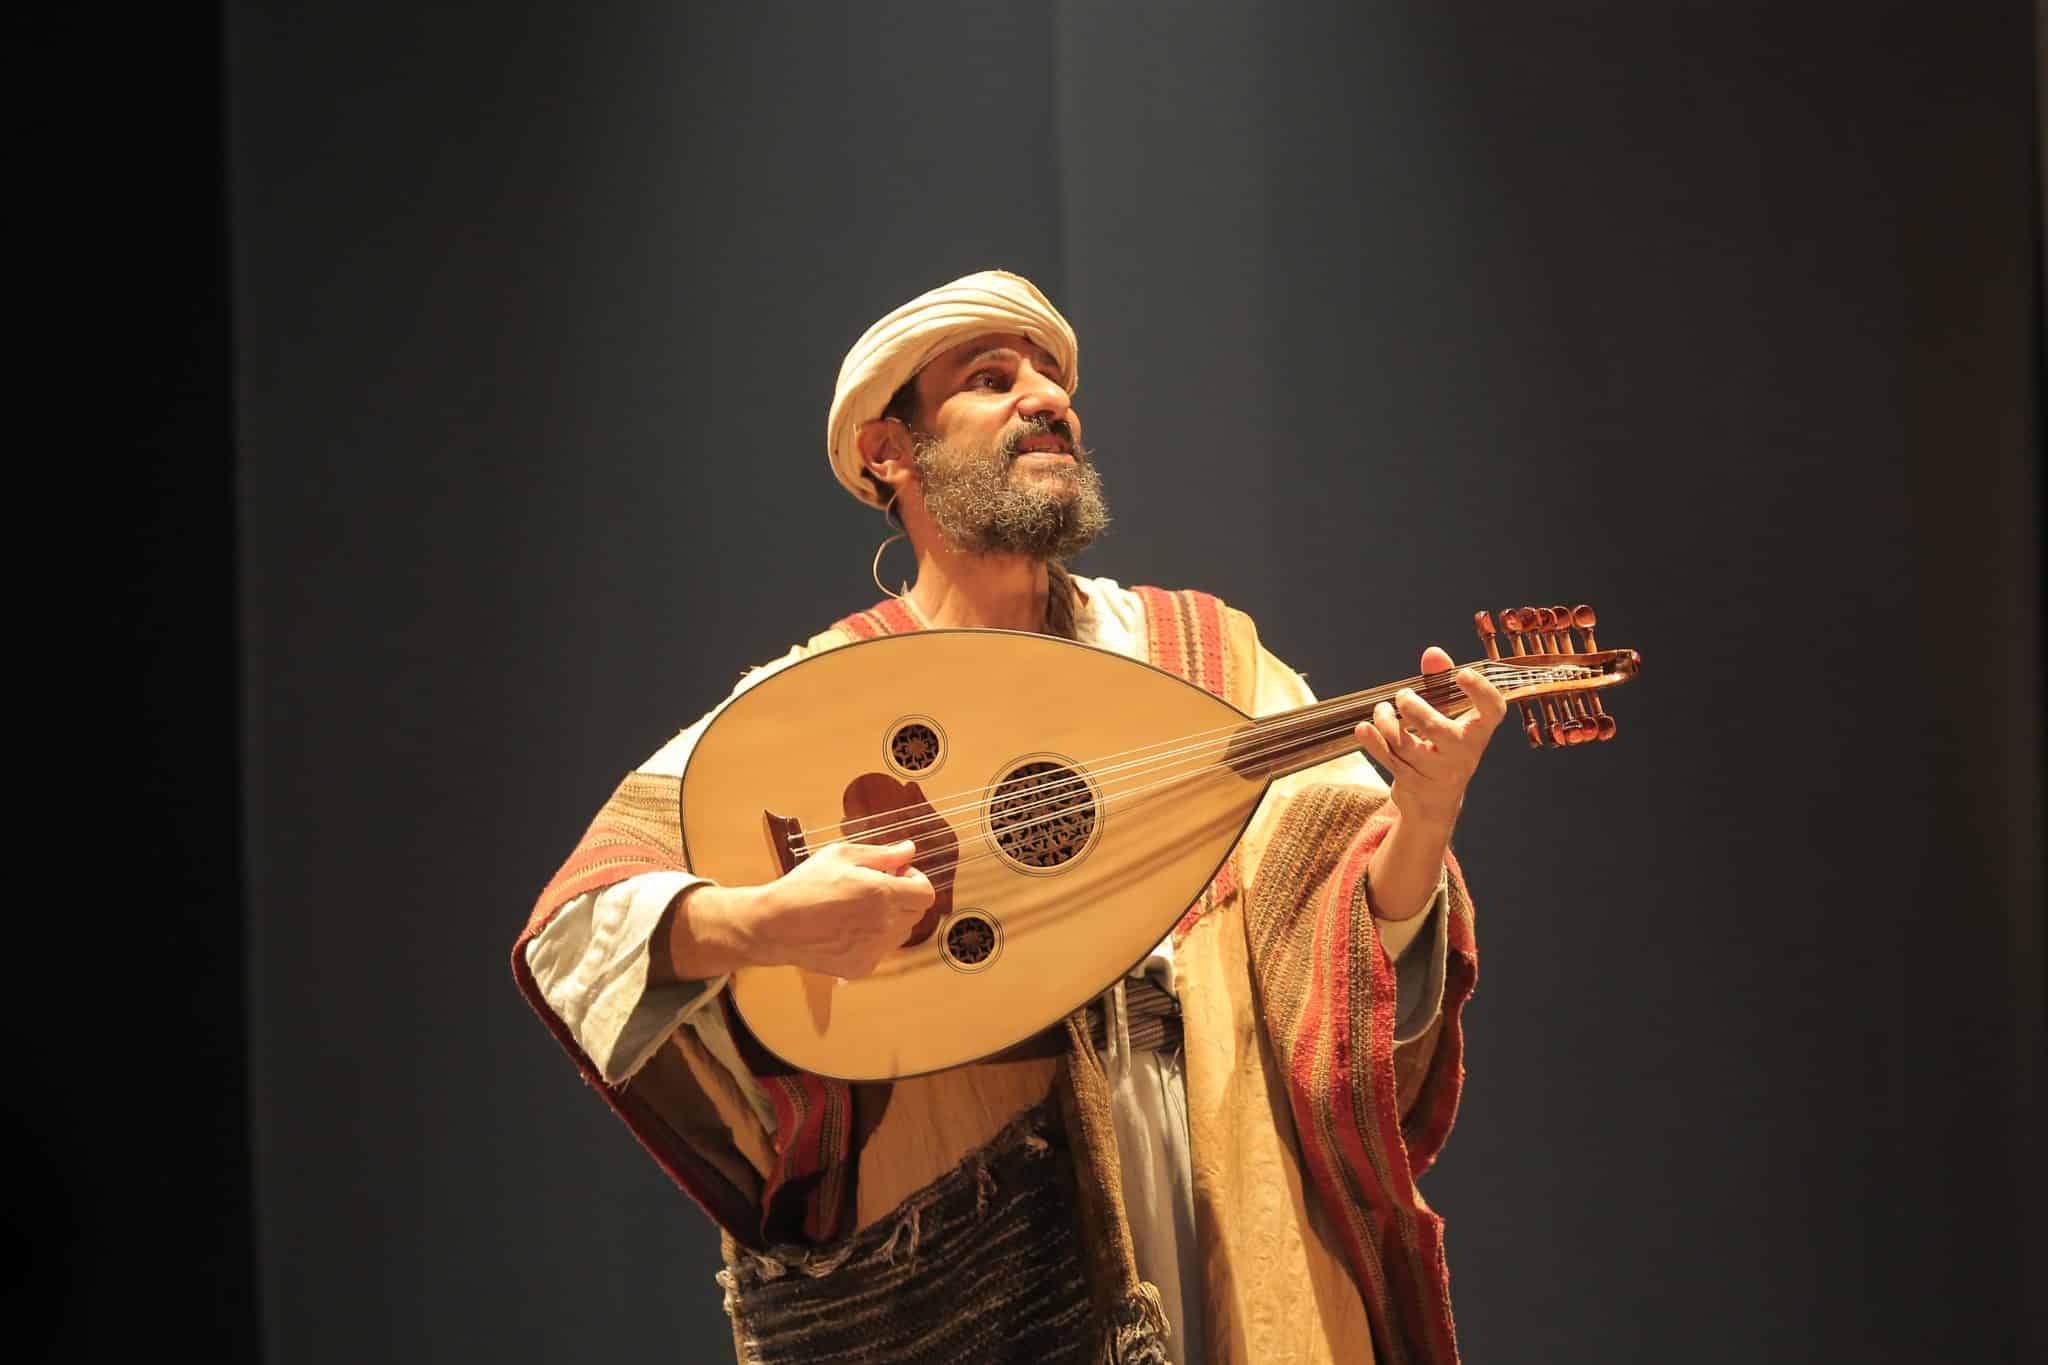 revistaprosaversoearte.com - Espetáculo 'O Profeta' - retorna a São Paulo em curta temporada no Teatro Bravos